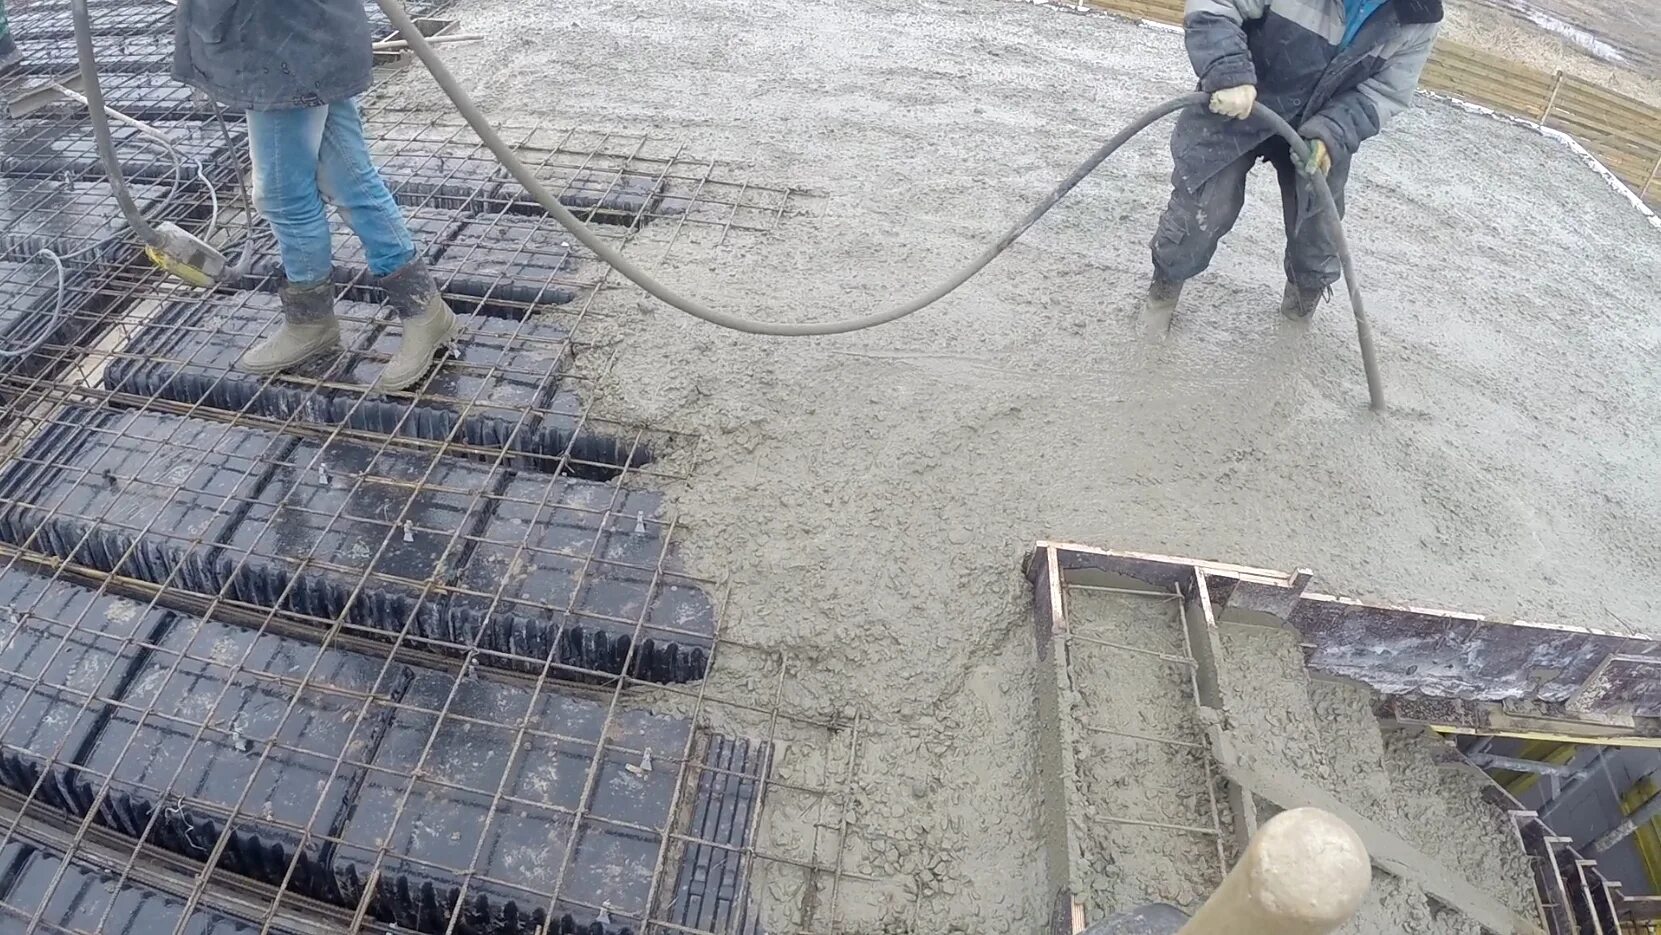 Квадратных метра заливка бетона. Монолитный фундамент, бетон м100. Бетонирование монолитной плиты перекрытия. Бетонирование фундамента. Укладка бетона.